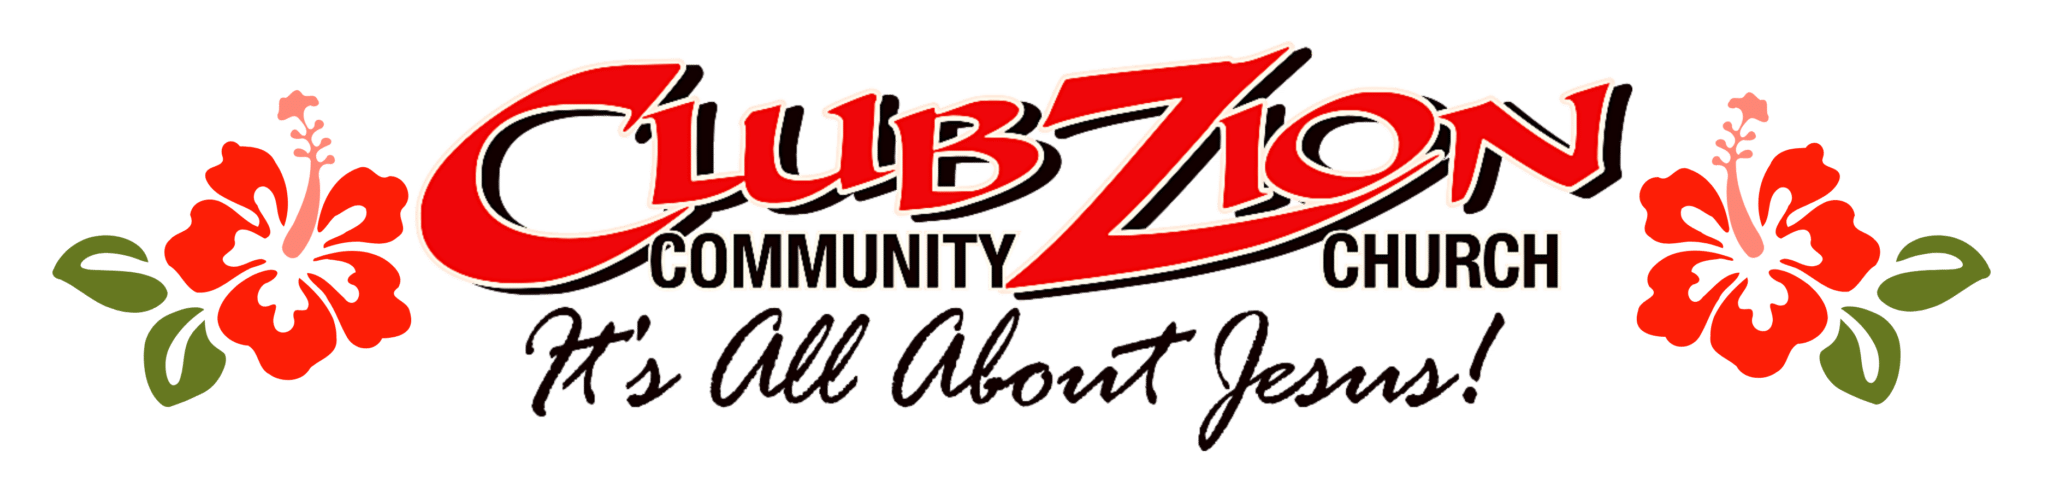 Club Zion Community Church